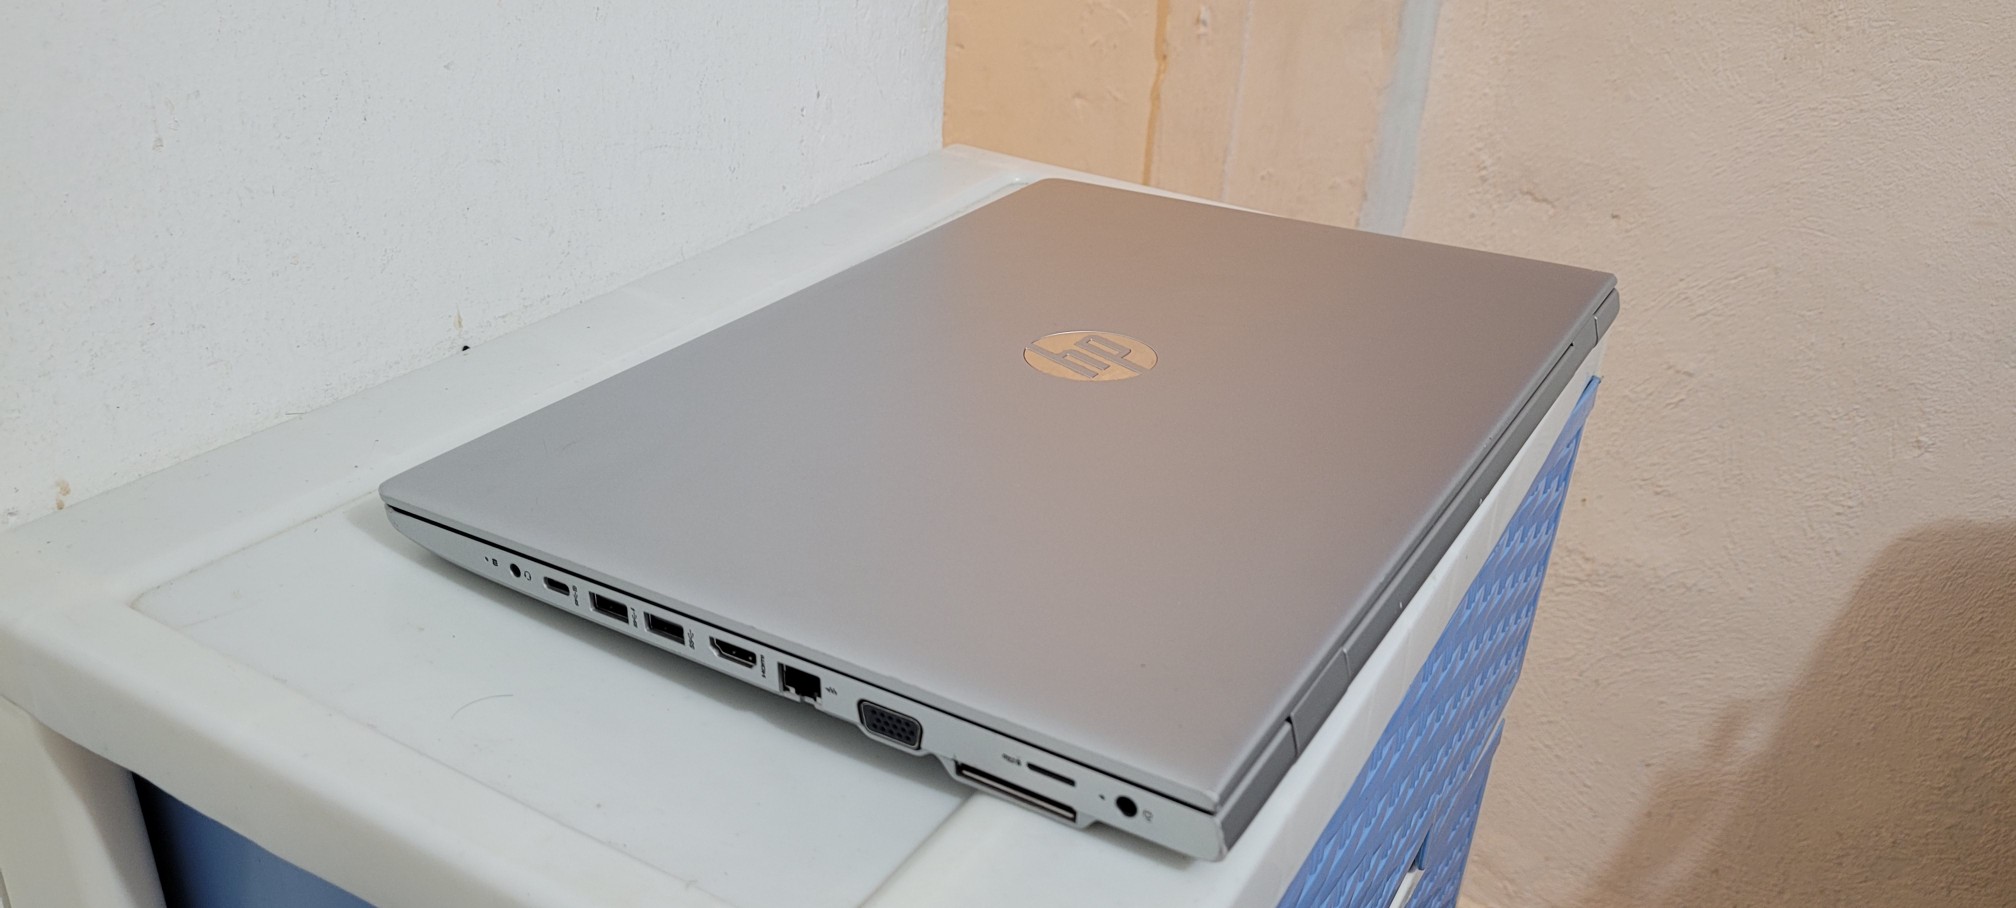 computadoras y laptops - laptop hp G4 17 Pulg Core i5 7ma Gen Ram 8gb ddr4 Disco 256gb SSD Y 320GB  2